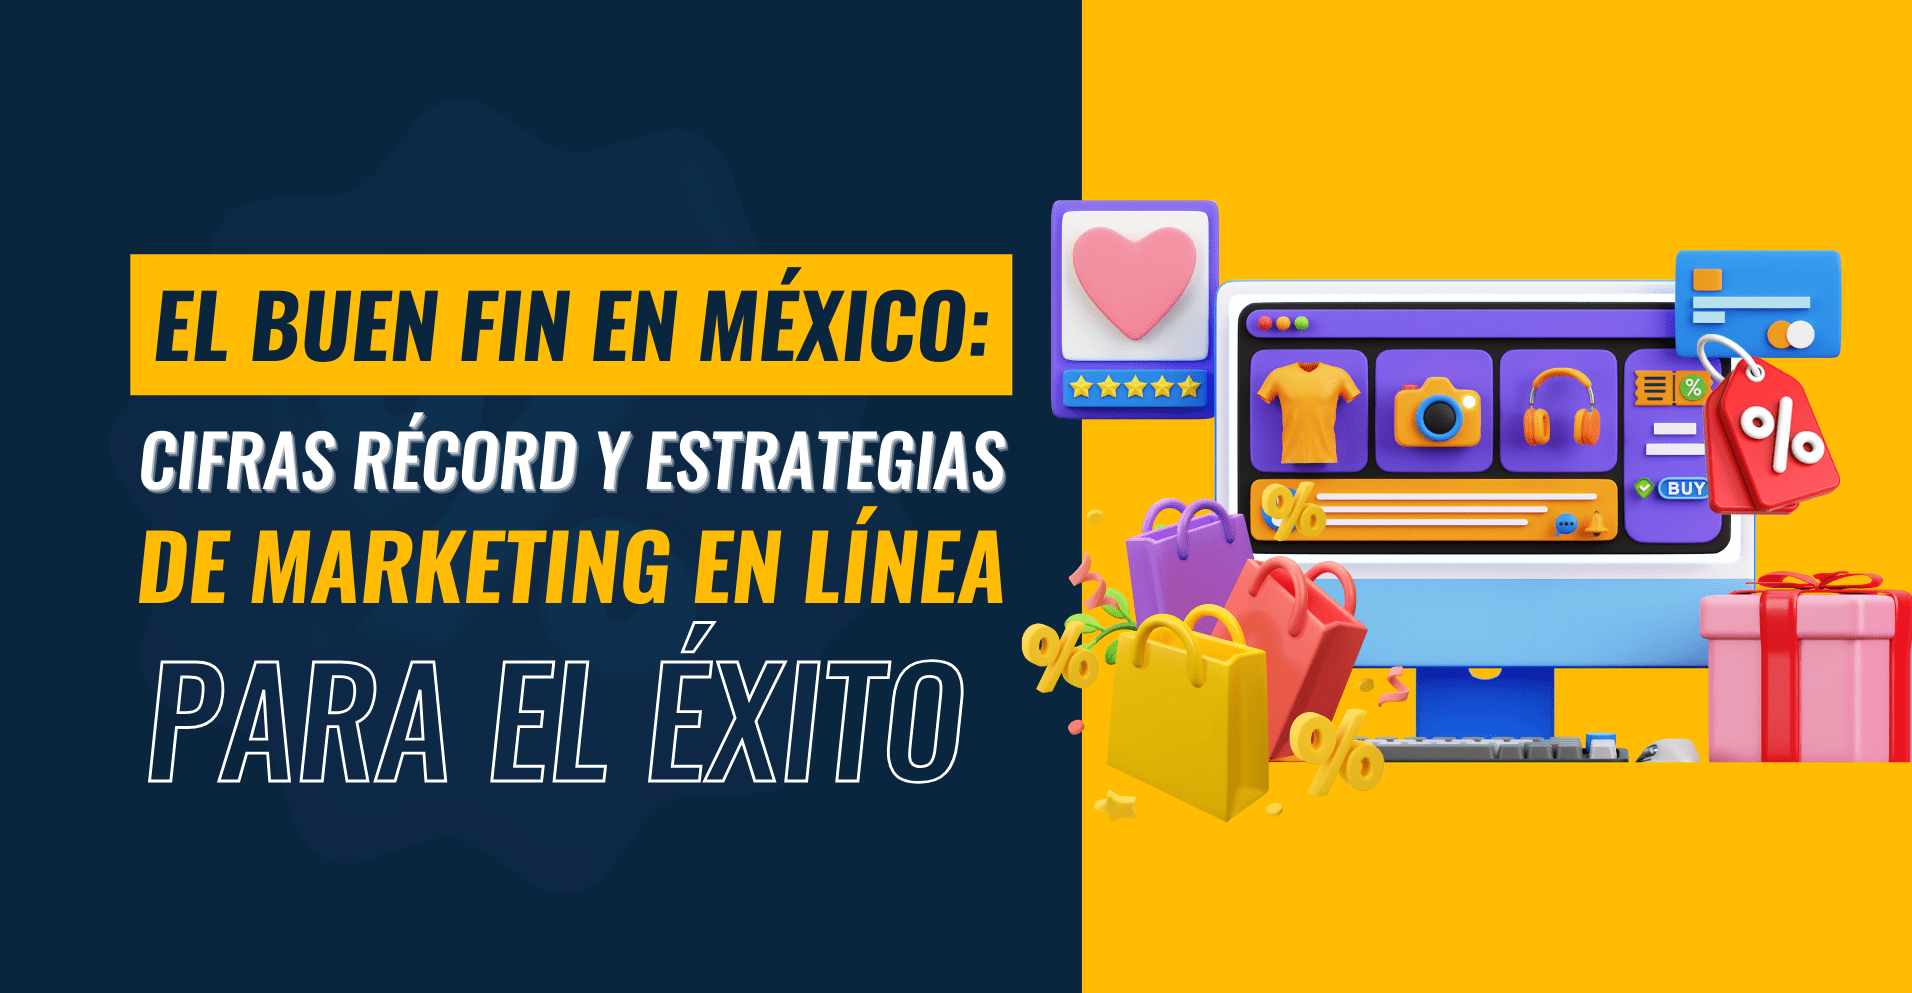 Imagen: El Buen Fin en México: Cifras récord y estrategias de marketing en línea para el éxito.jpg